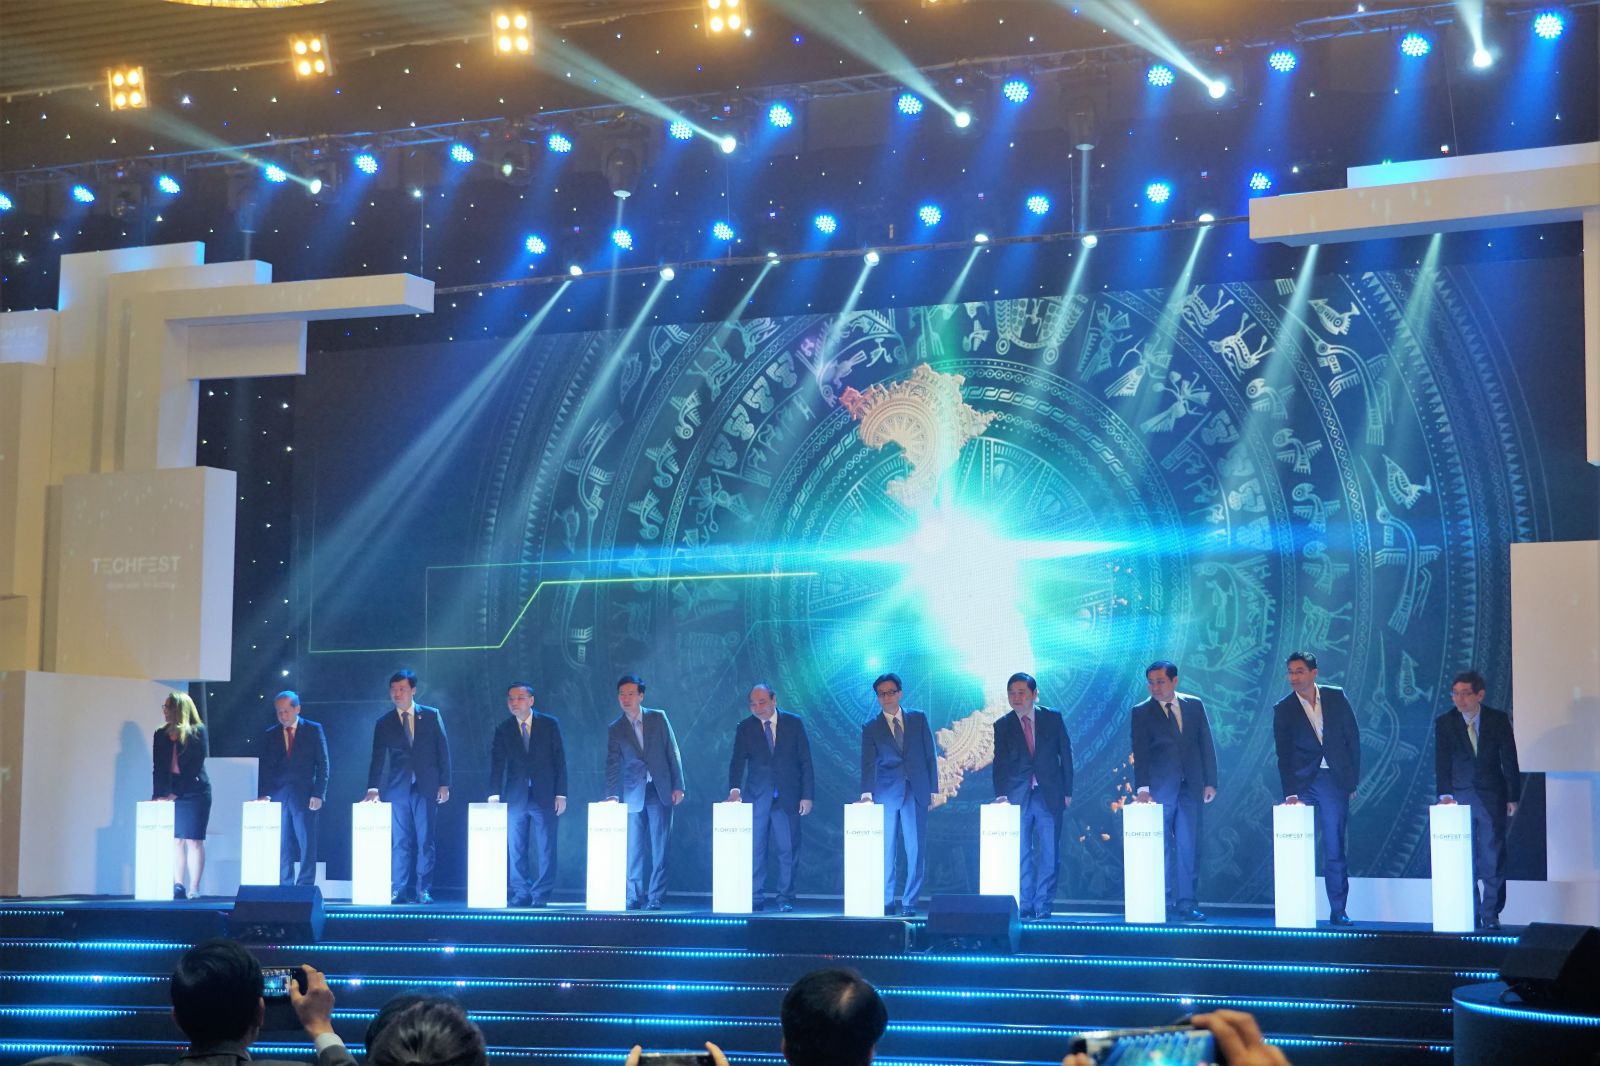 Thủ tướng Nguyễn Xuân Phúc cùng các đại biểu thực hiện nghi thức nhấn nút khai mạc Techfest 2018 diễn ra tại Đà Nẵng tối 29/11